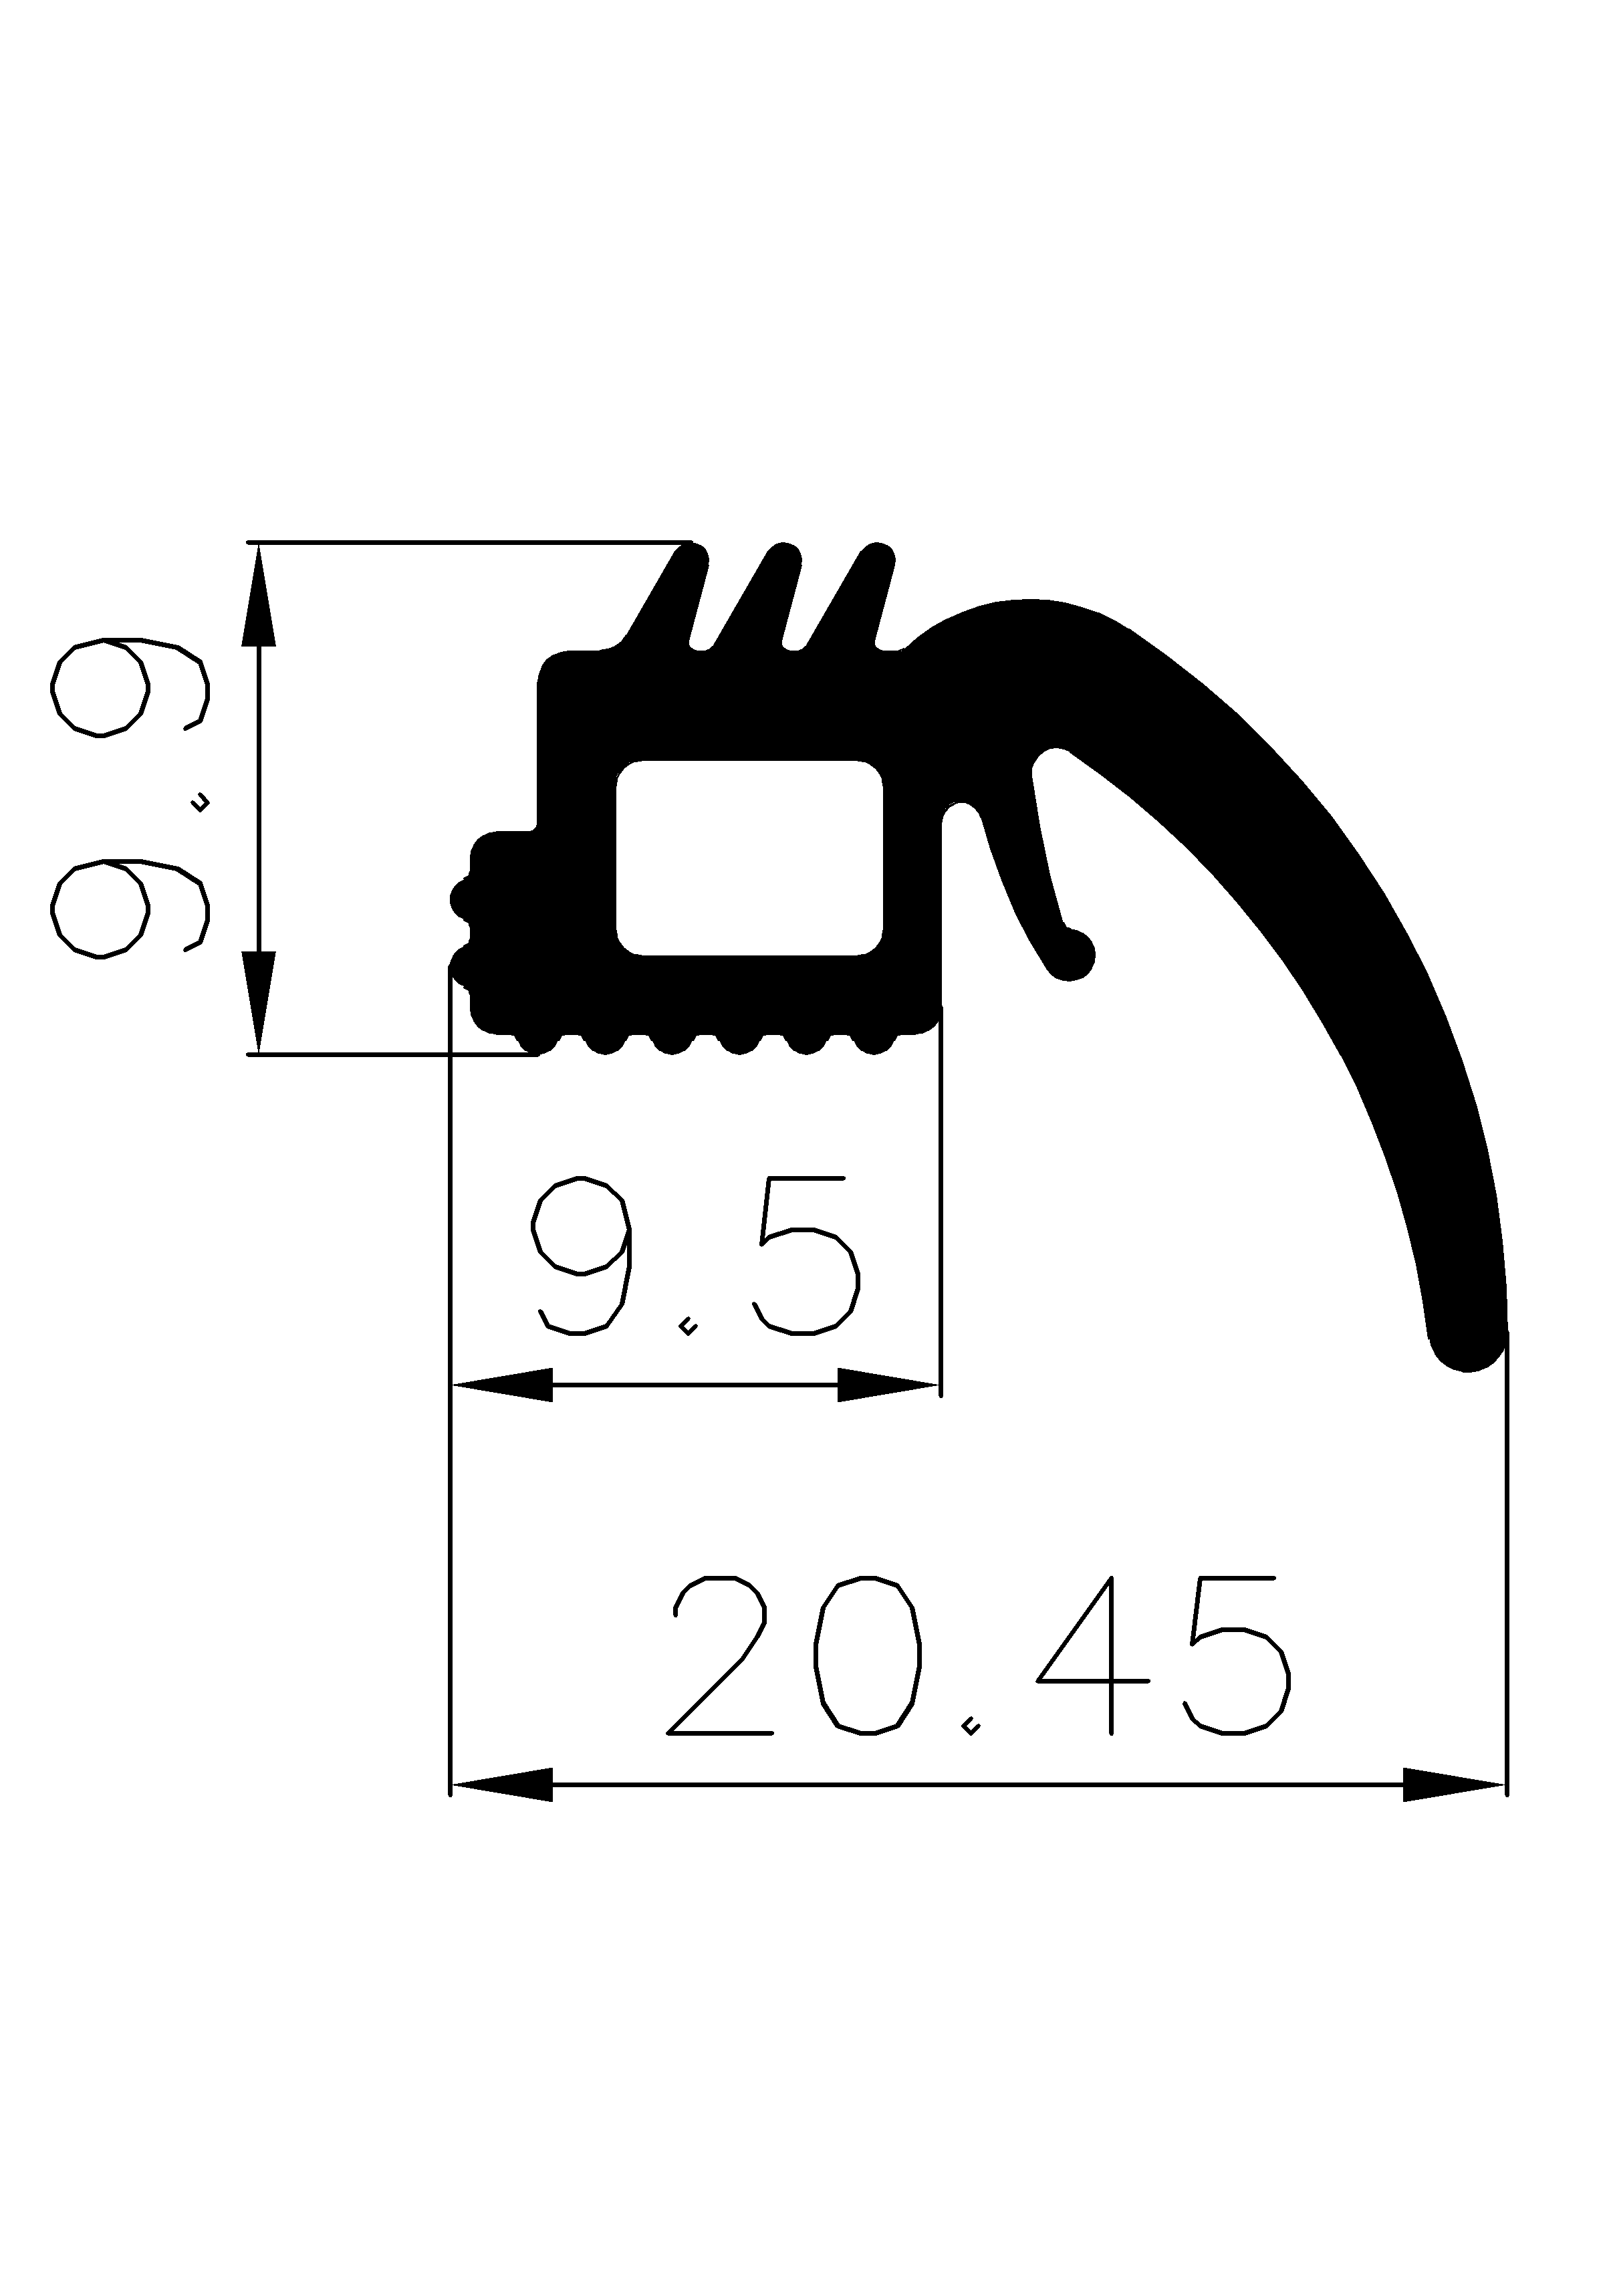 3020140KG - Silikongummi-Profile - Türscheiben- Fensterdichtungsprofile